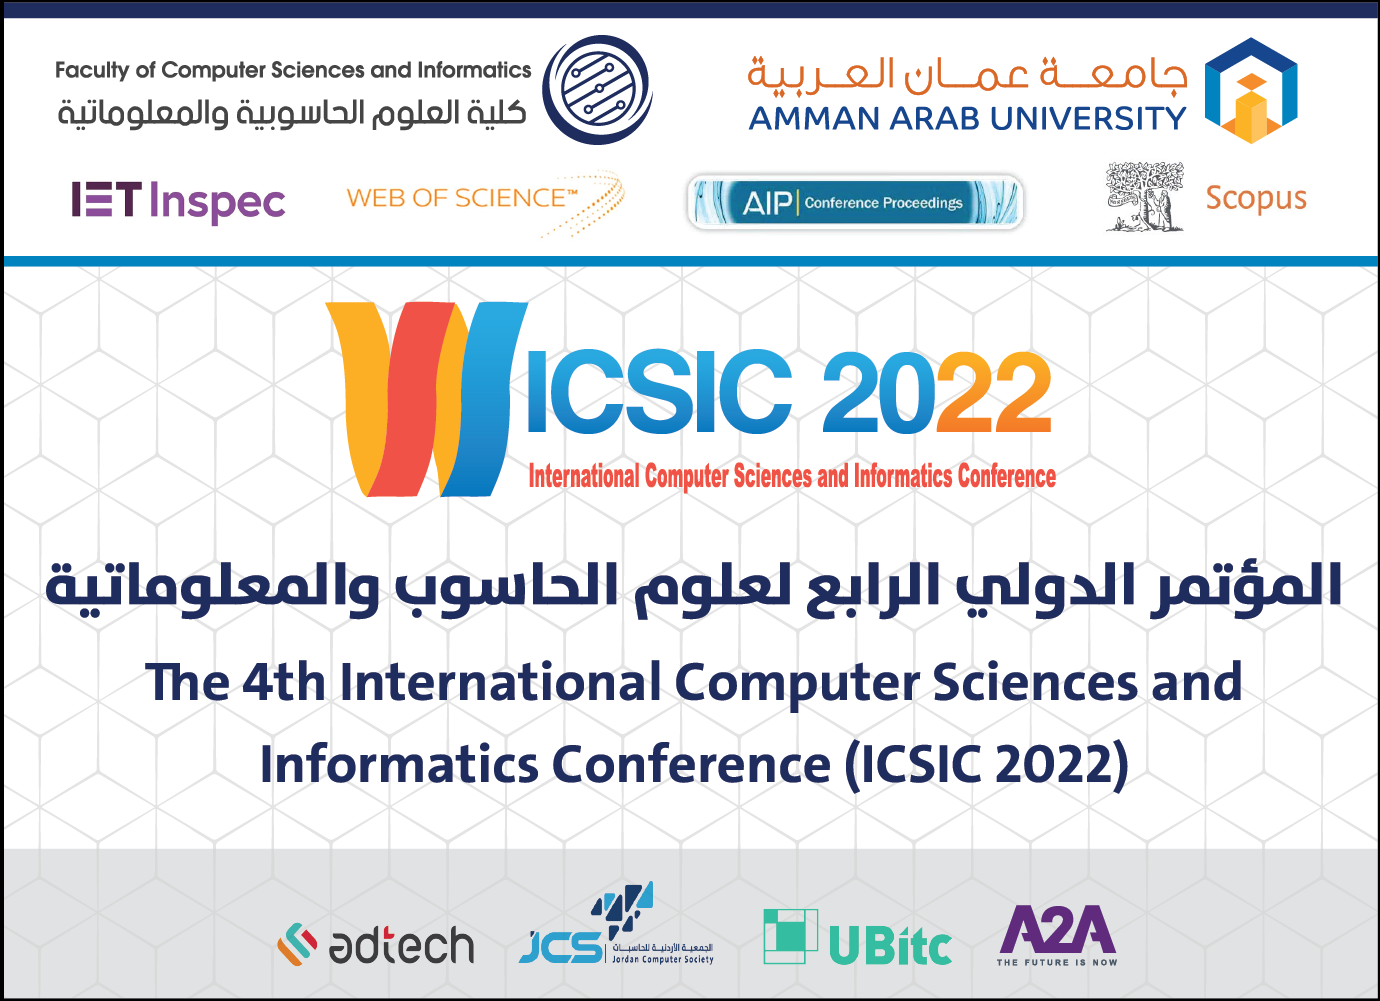 وقائع محاضرات المتحدثين الرئيسين في المؤتمر الدولي الرابع في علوم الحاسوبية والمعلوماتية  ICSIC2022 في جامعة عمان العربية1